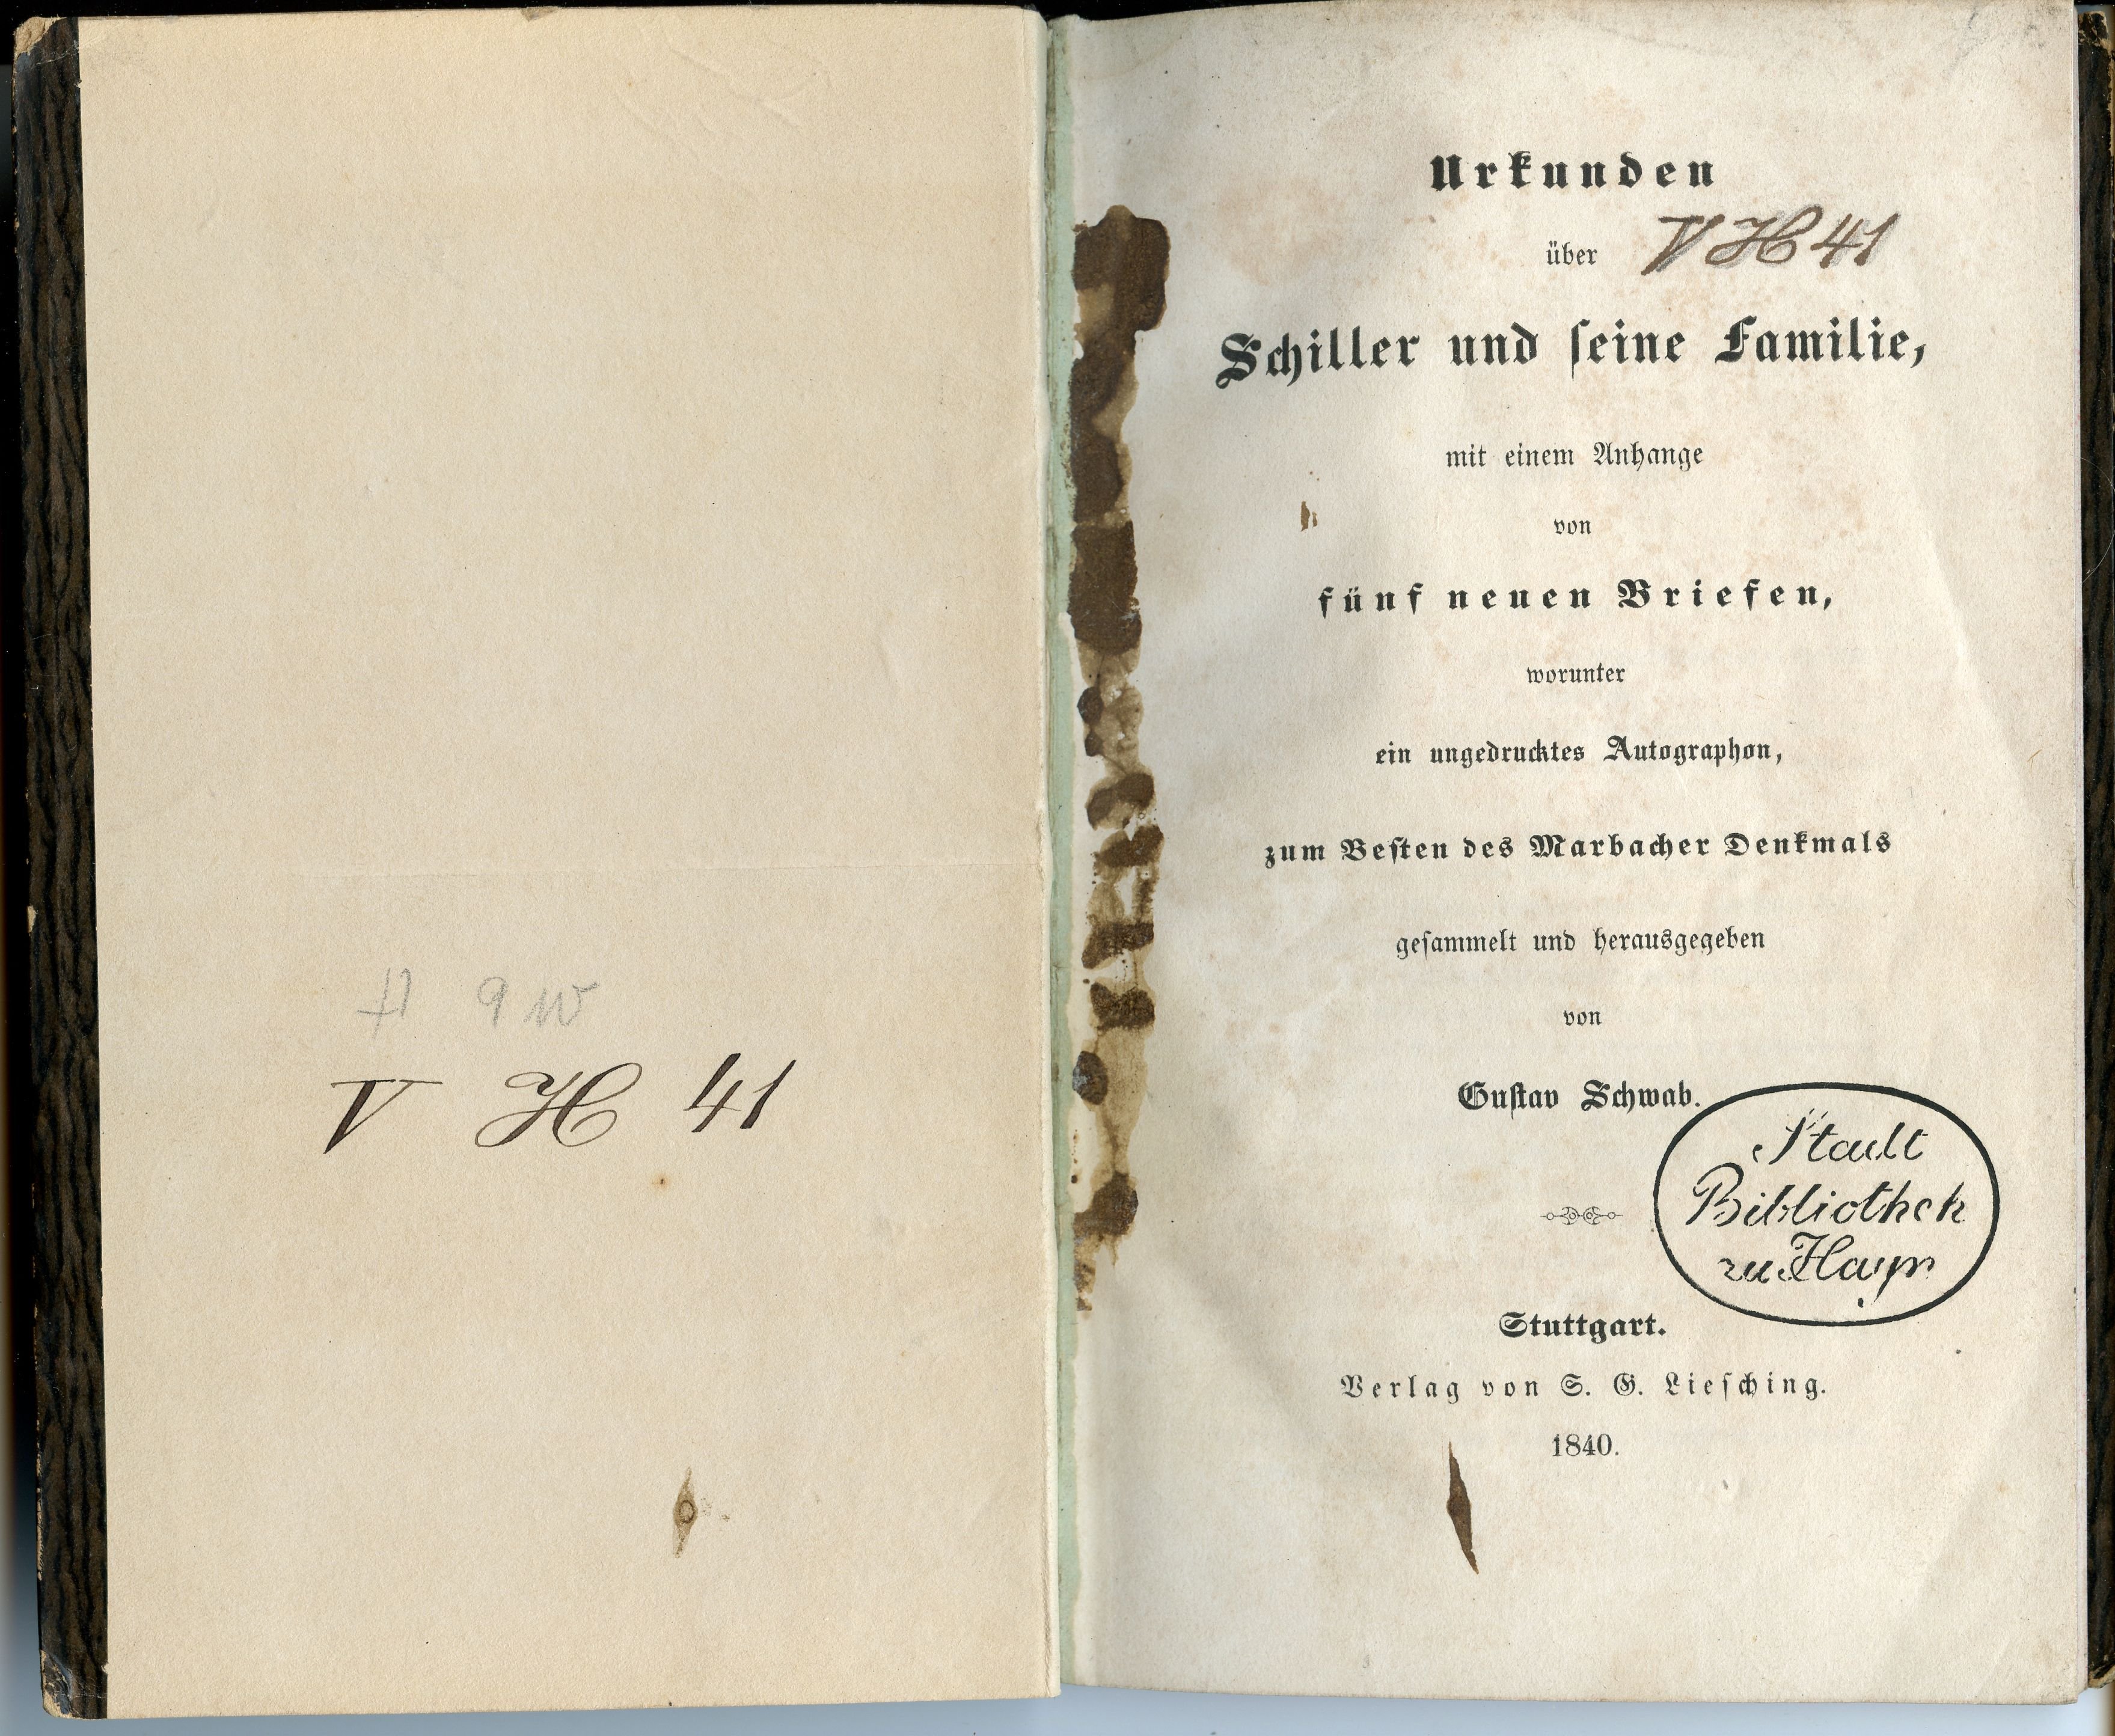 Schwab, Gustav (Hrsg.): Urkunden über Schiller und seine Familie [...], 1840 (Museum Alte Lateinschule CC BY-NC-SA)